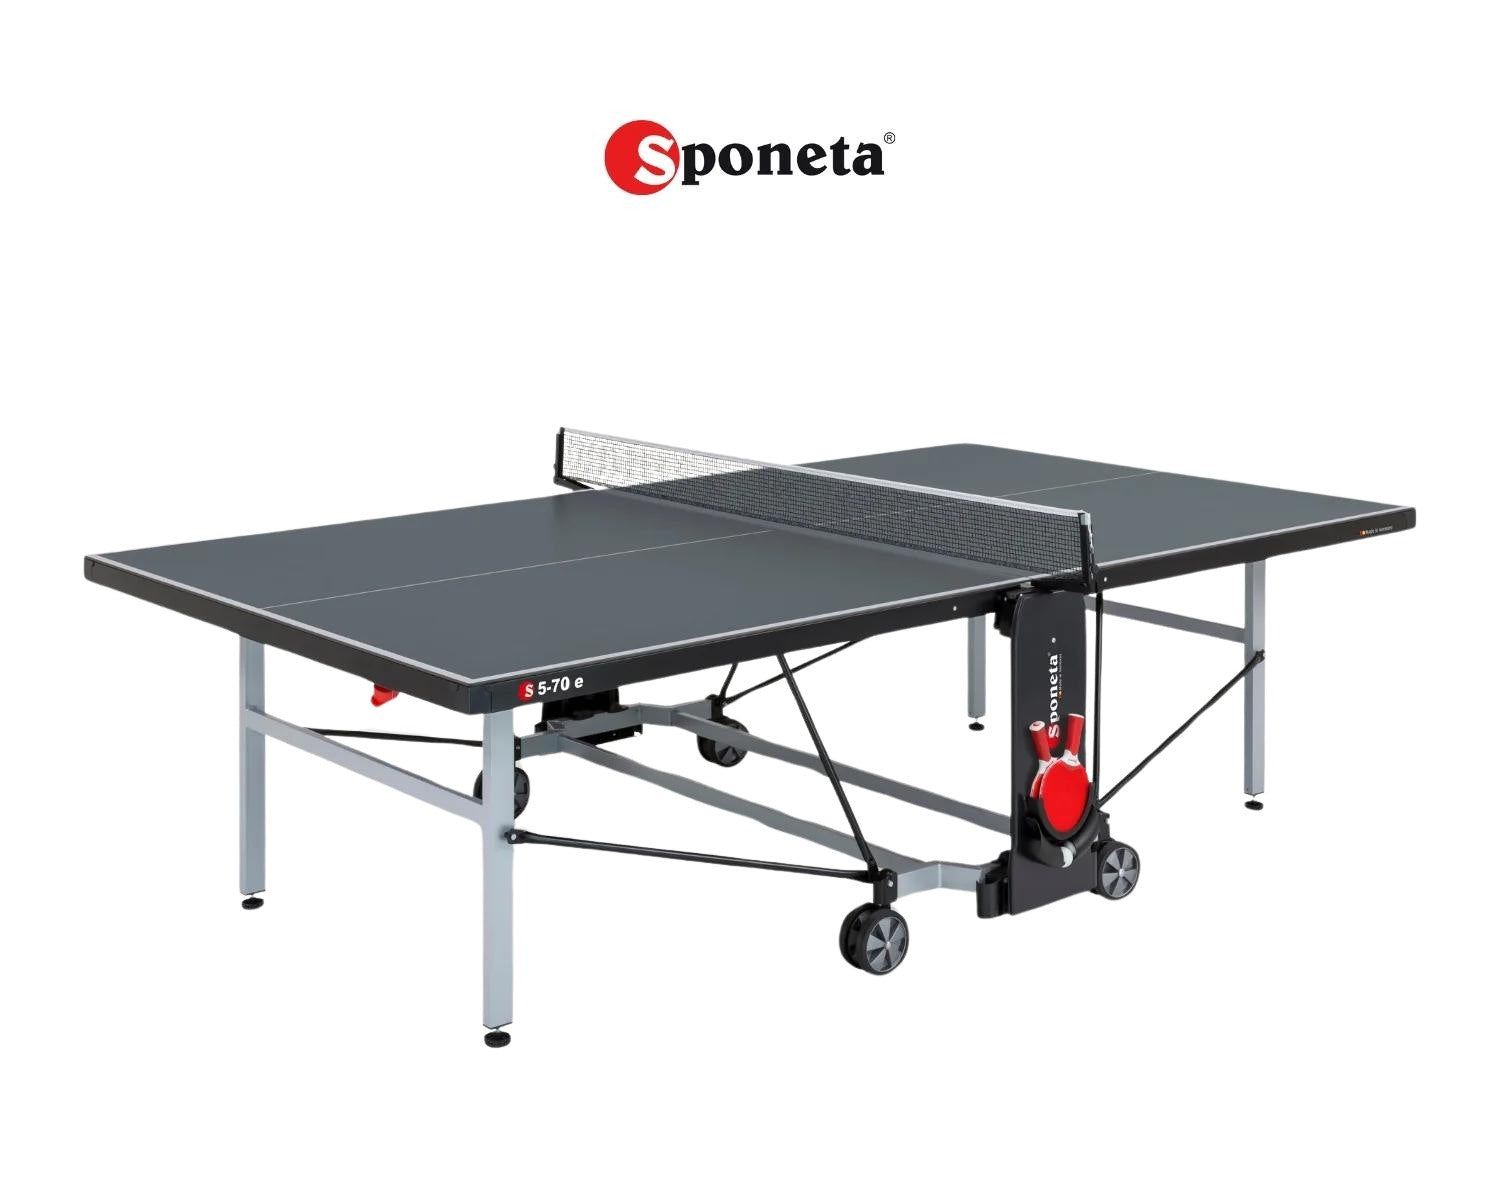 Sponeta Tavolo da Ping Pong Outdoor S 5-70 e